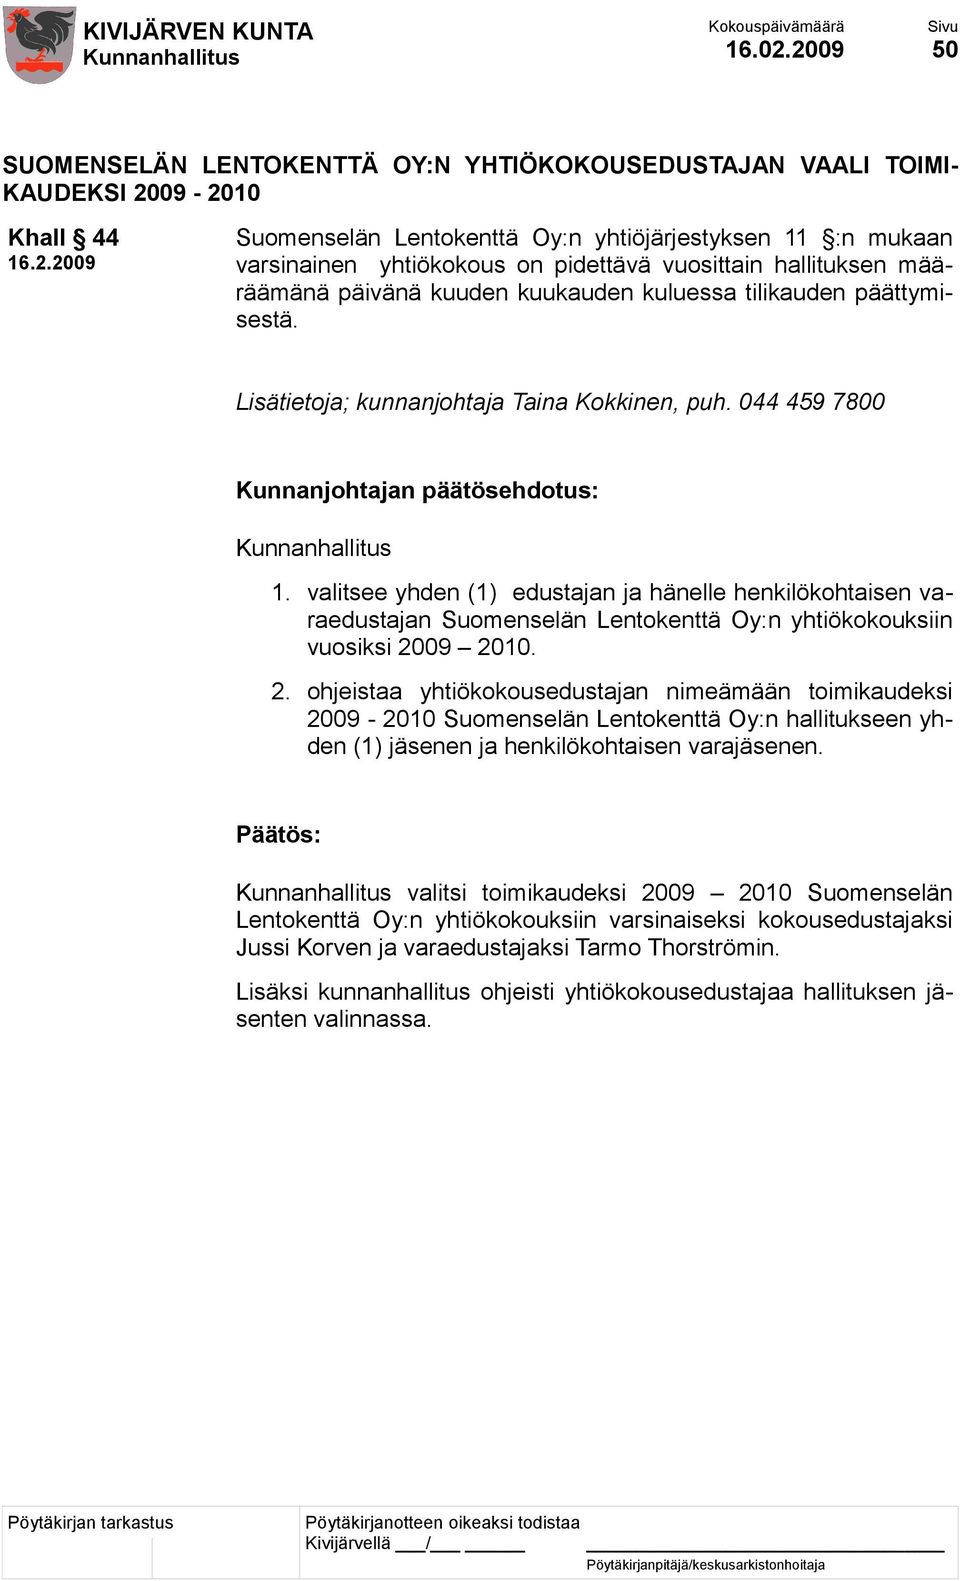 vuosittain hallituksen määräämänä päivänä kuuden kuukauden kuluessa tilikauden päättymisestä. Lisätietoja; kunnanjohtaja Taina Kokkinen, puh. 044 459 7800 1.